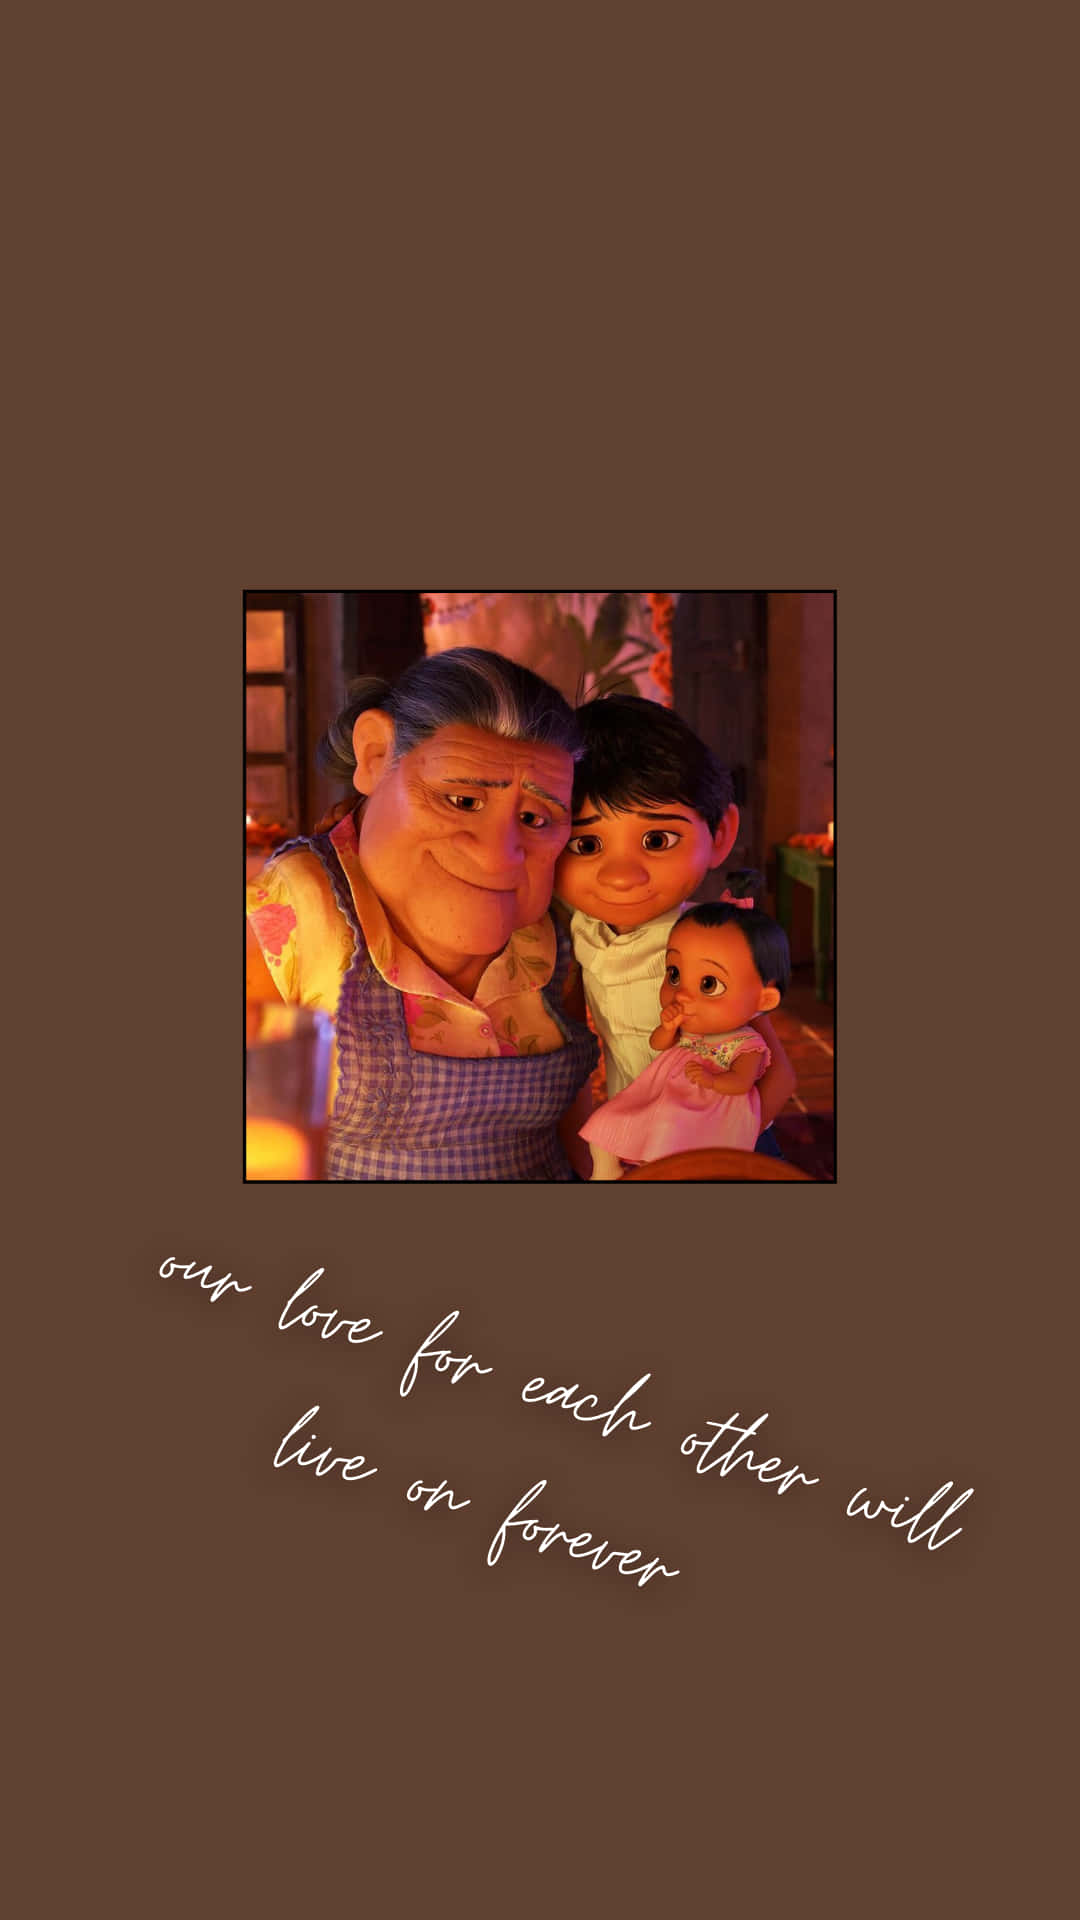 Följmed Miguel Och Hans Fantastiska Familj På Deras Magiska Äventyr I Disneys Pixar’s Coco! Wallpaper